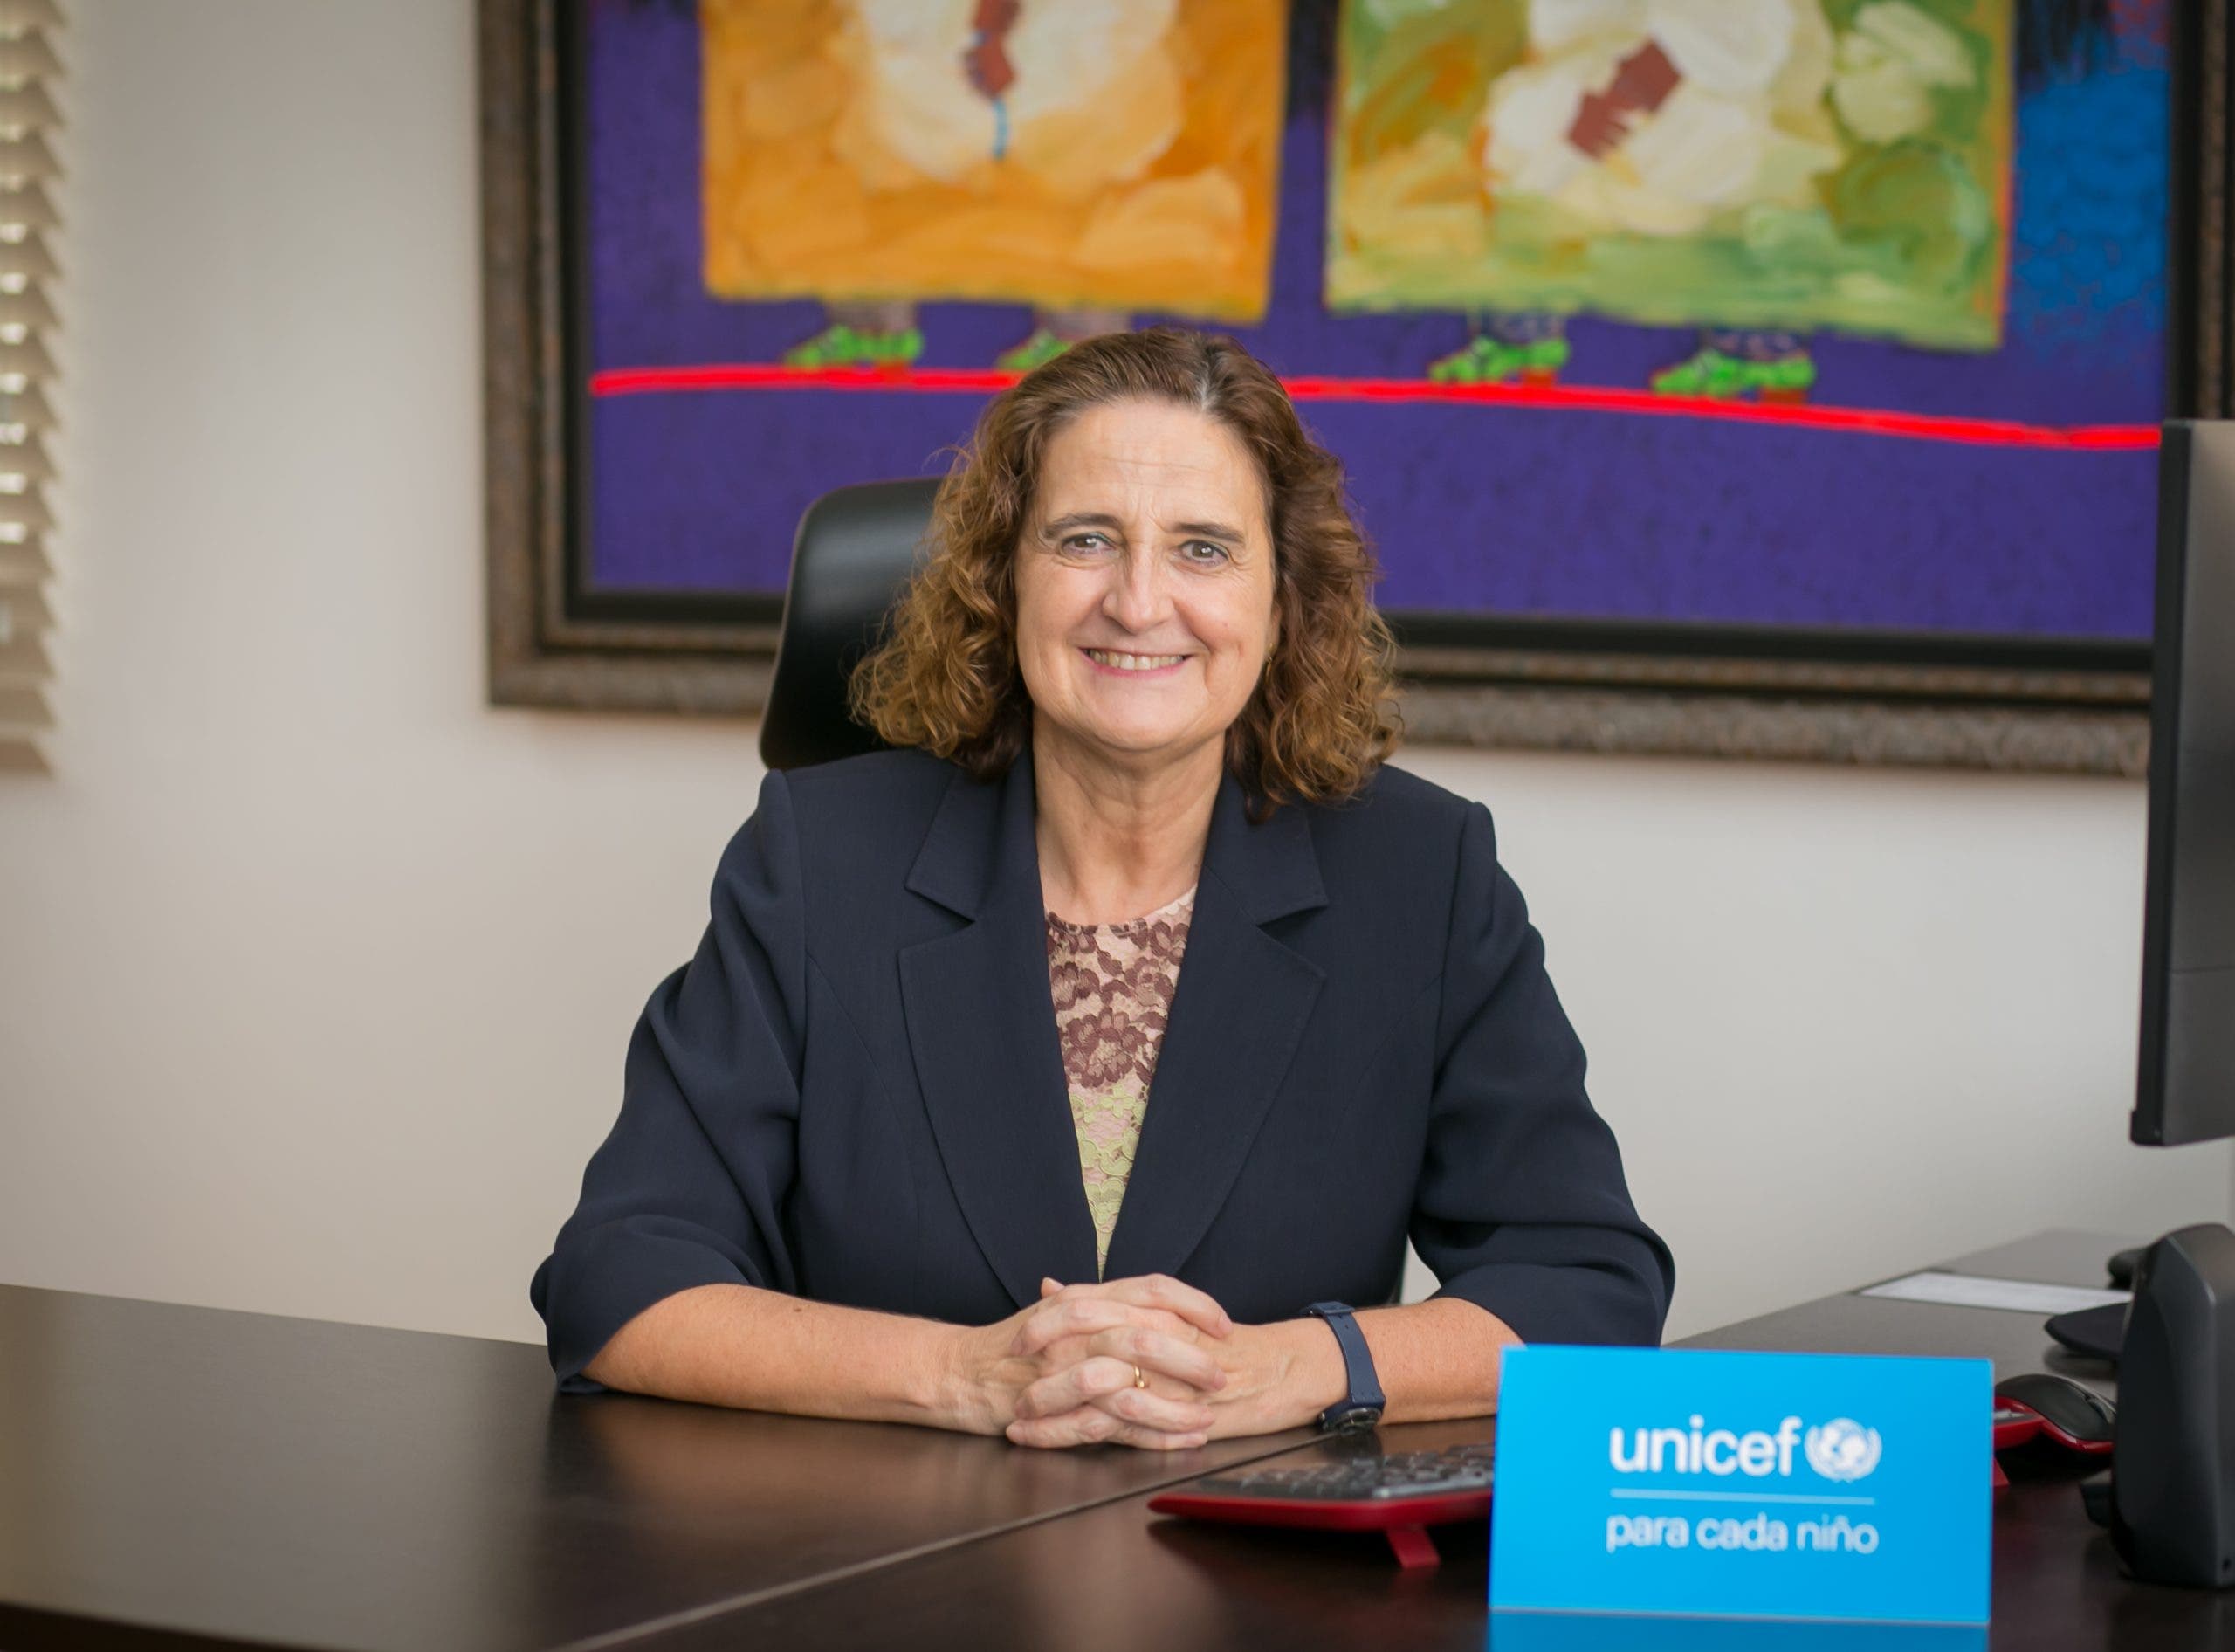 UNICEF manifiesta su preocupación por la difusión de imágenes con contenido sexual o de abuso con niños y niñas por redes sociales